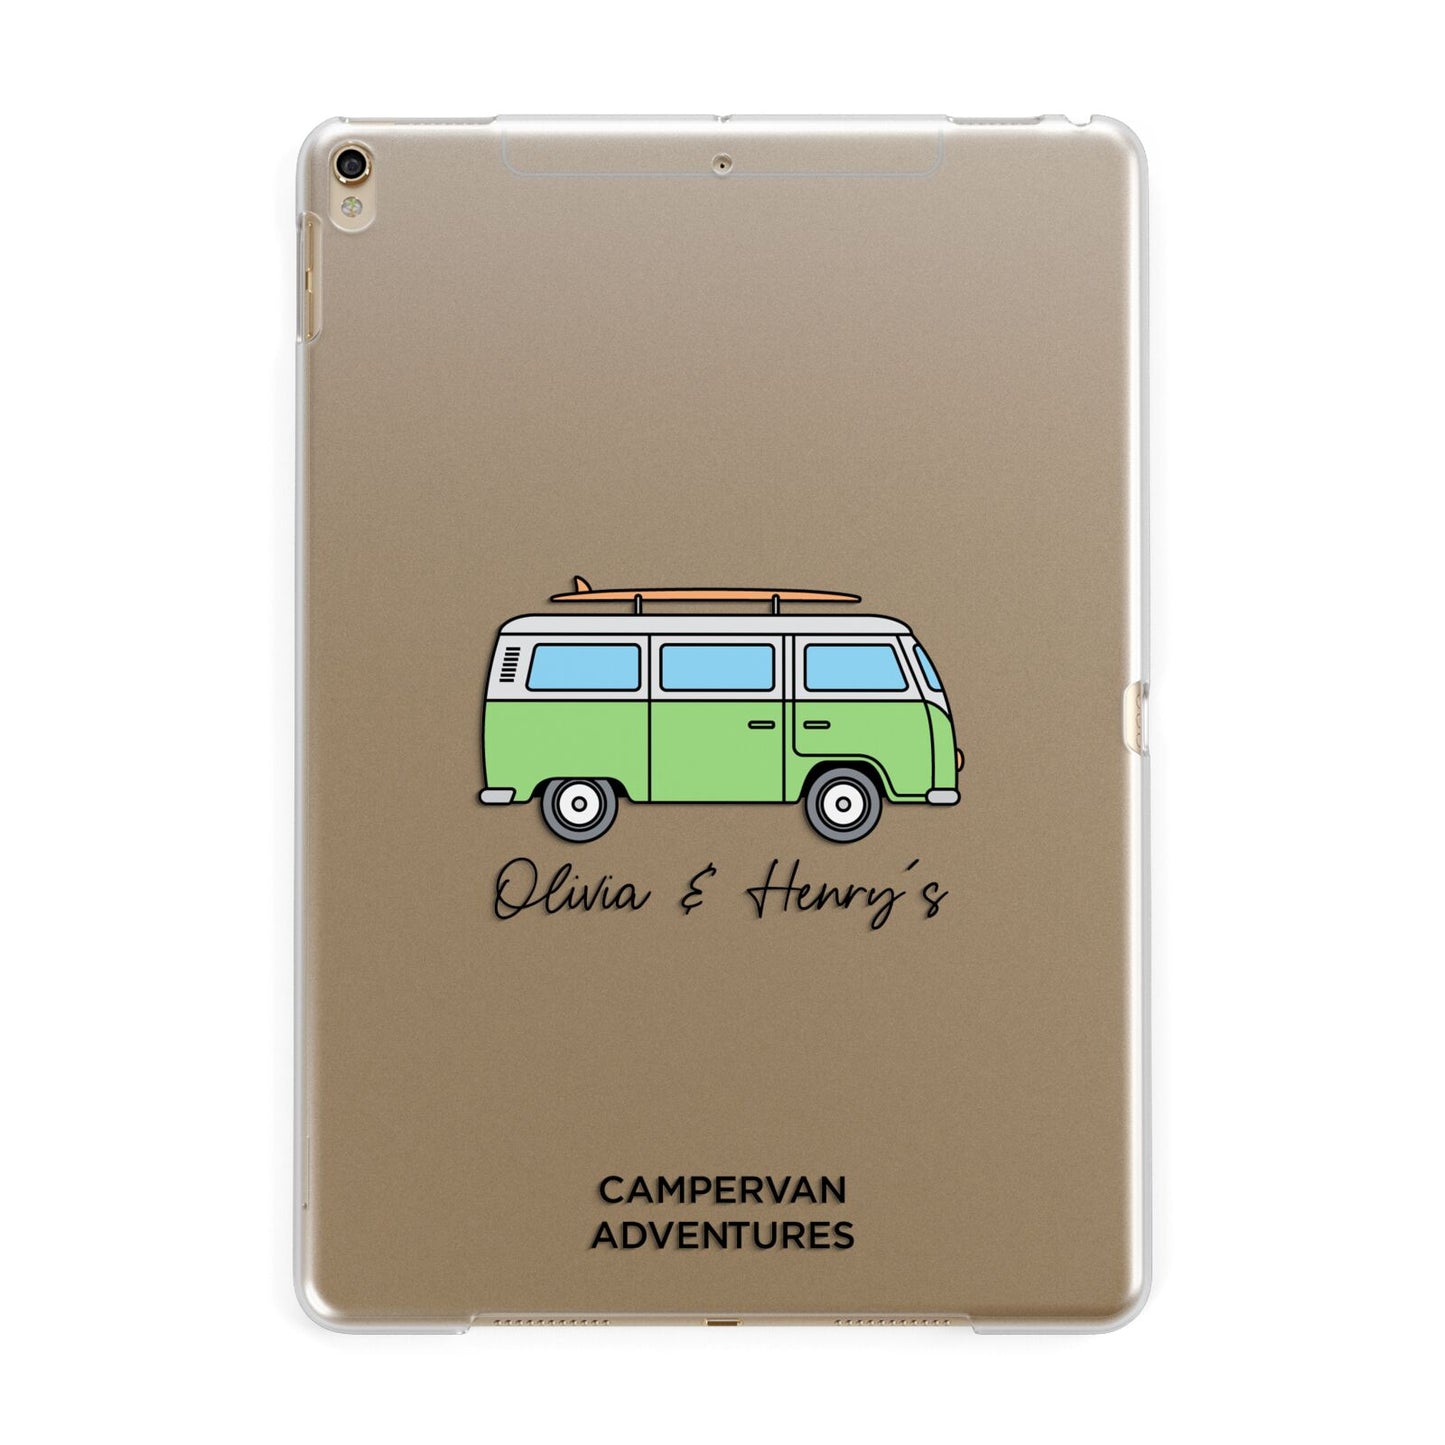 Green Bespoke Campervan Adventures Apple iPad Gold Case